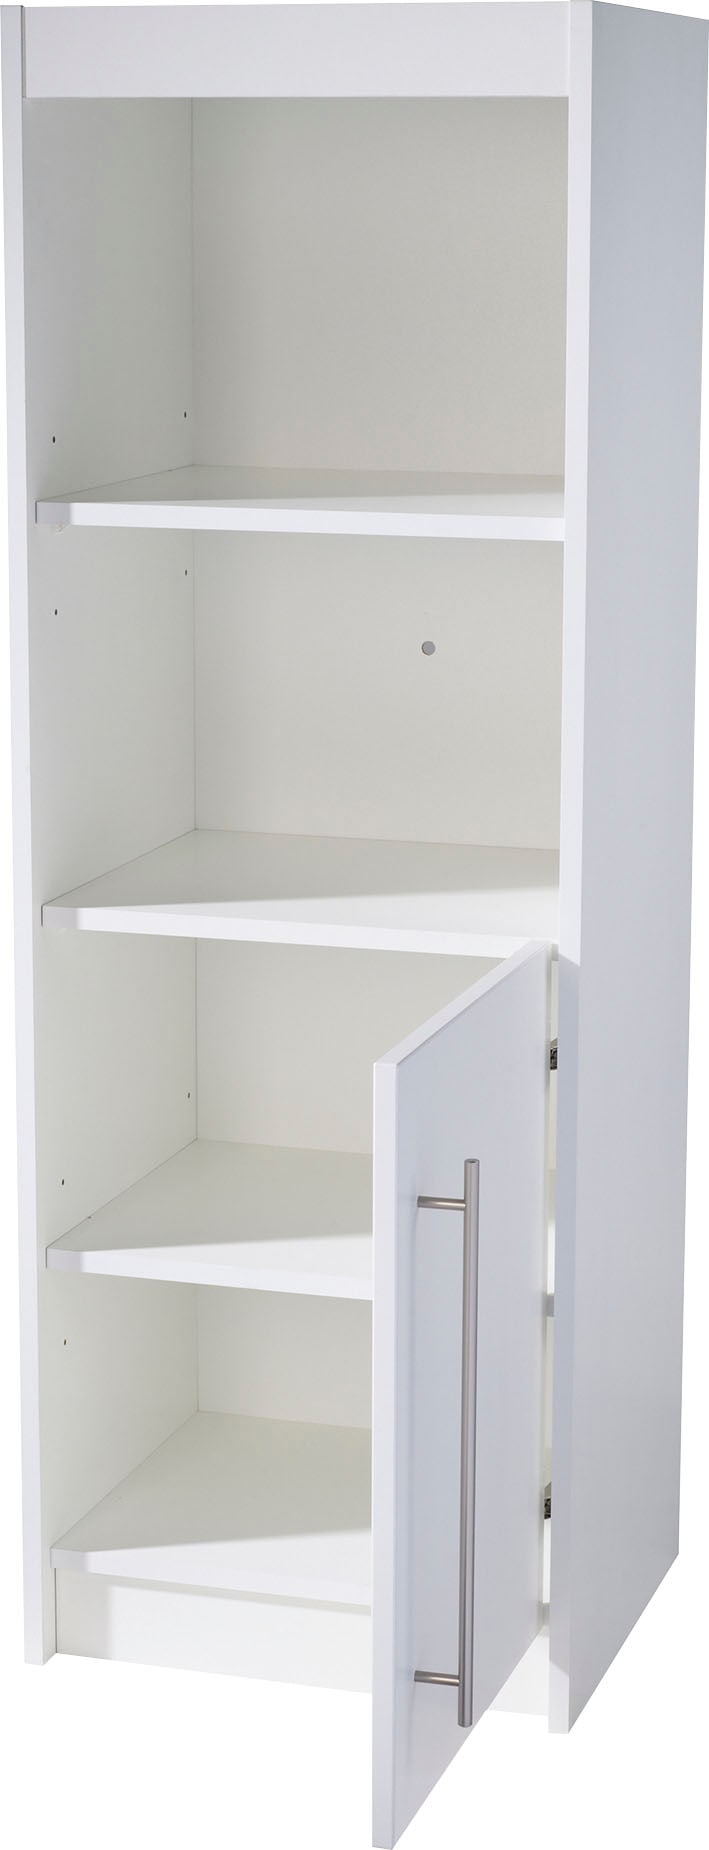 roba® Standregal »Regal Maren 125 cm hoch - Weiß«, modernes Bücher- oder Dekoregal, 2 offene Fächer, 1 Tür mit 2 Fächern